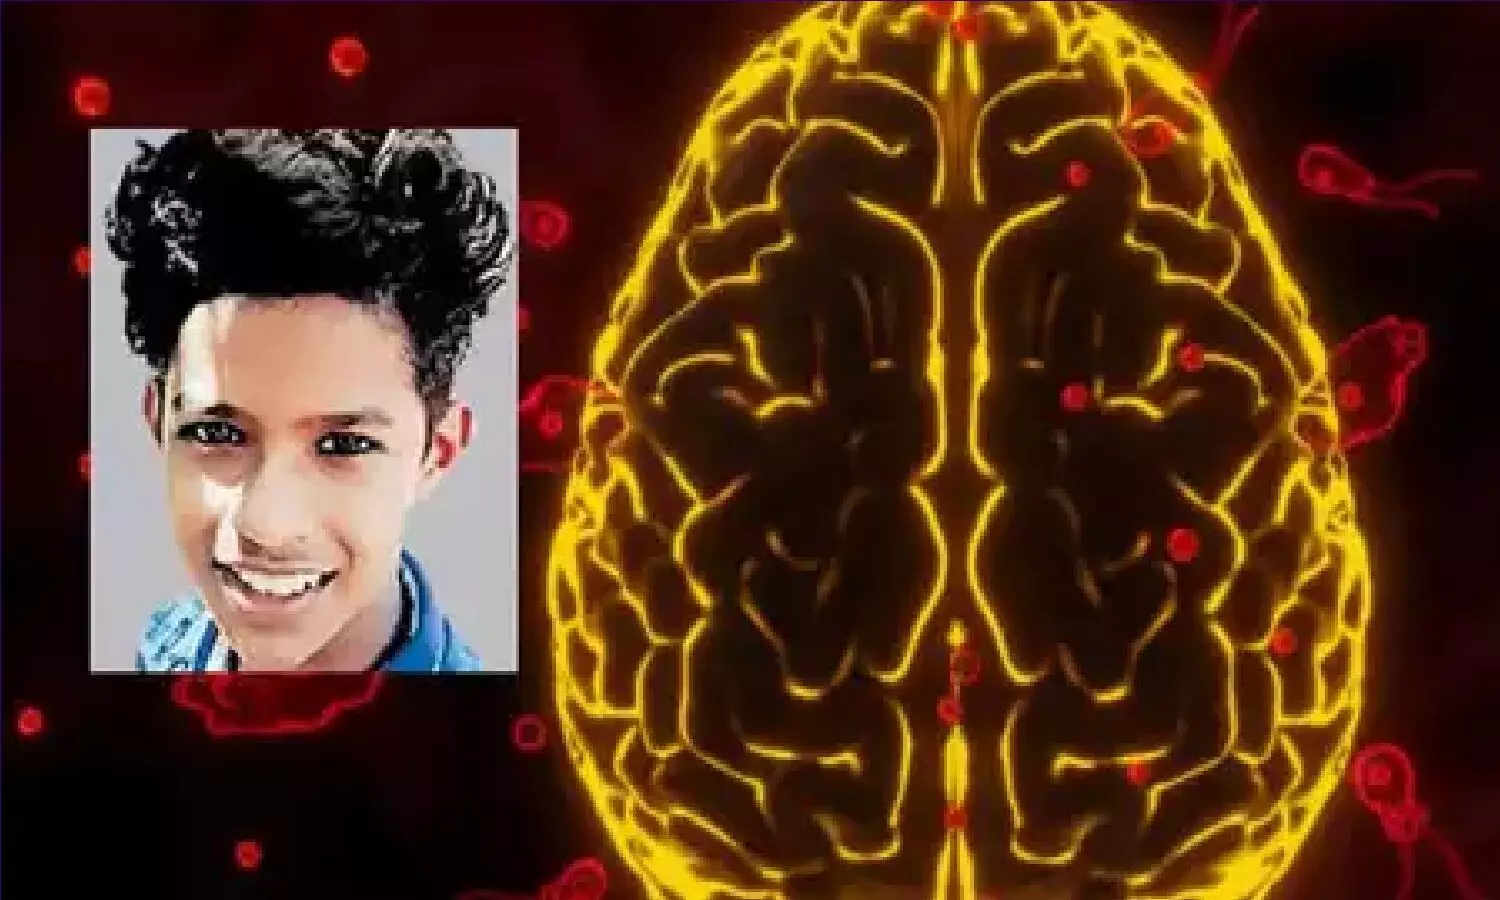 केरल में दिमाग खाने वाले अमीबा से 15 साल के लड़के की मौत! नहाते वक़्त नाक से घुसकर दिमाग तक पहुंच गया